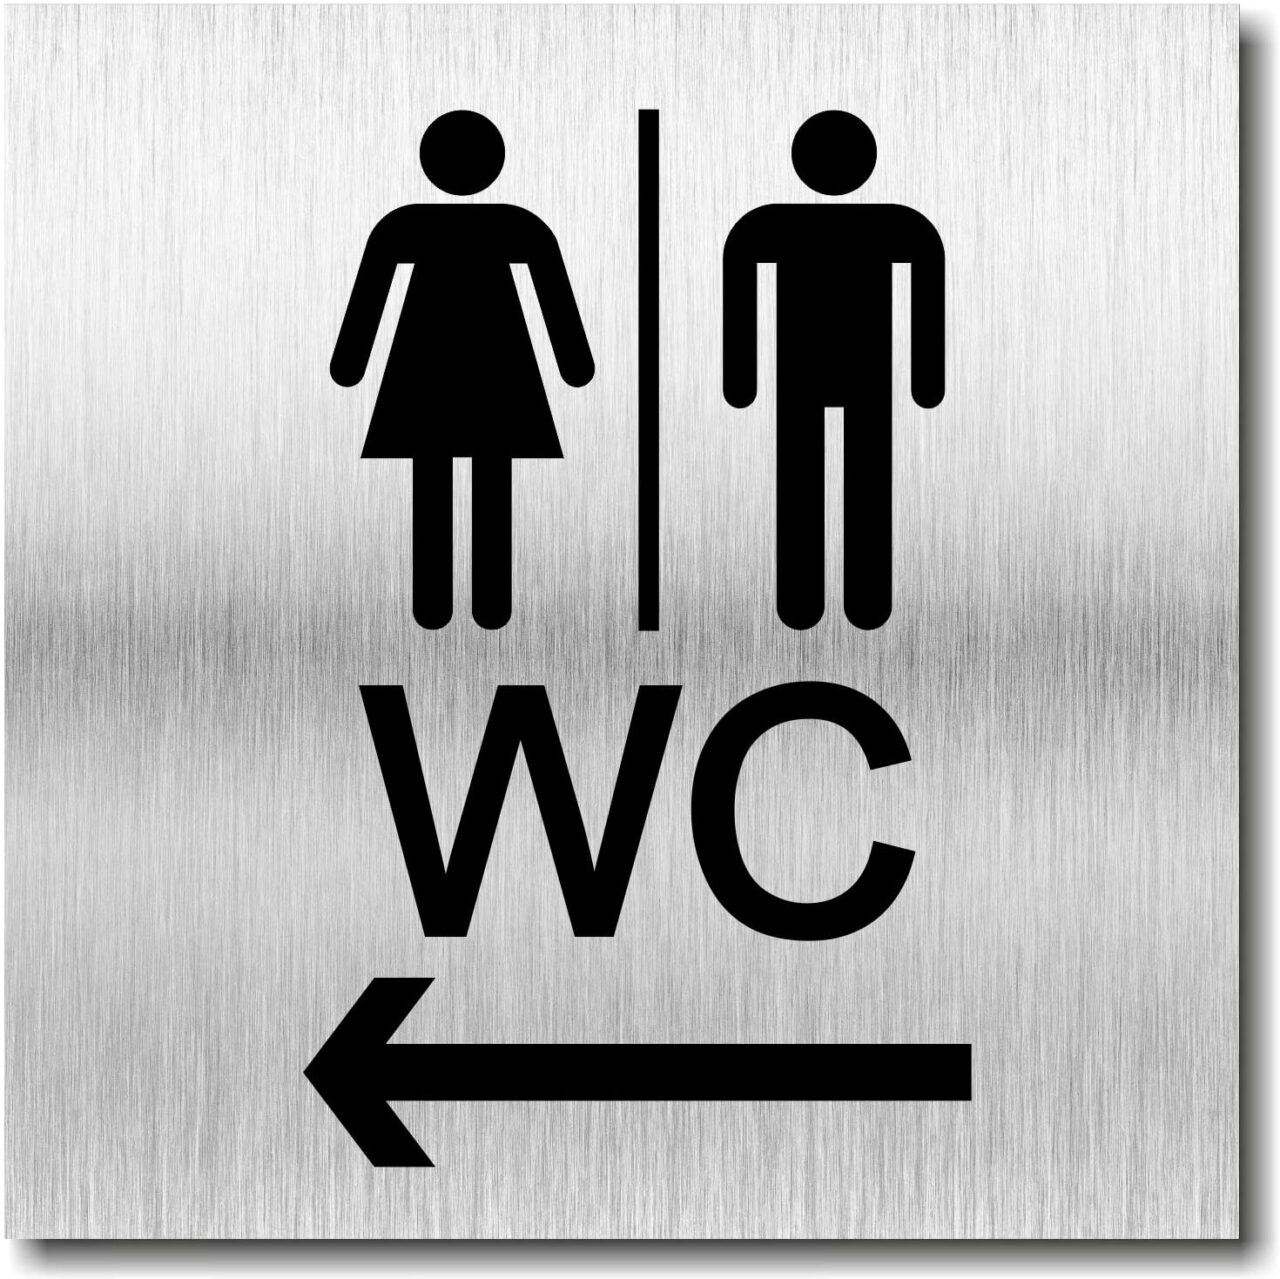 Türschild “Damen und Herren WC”